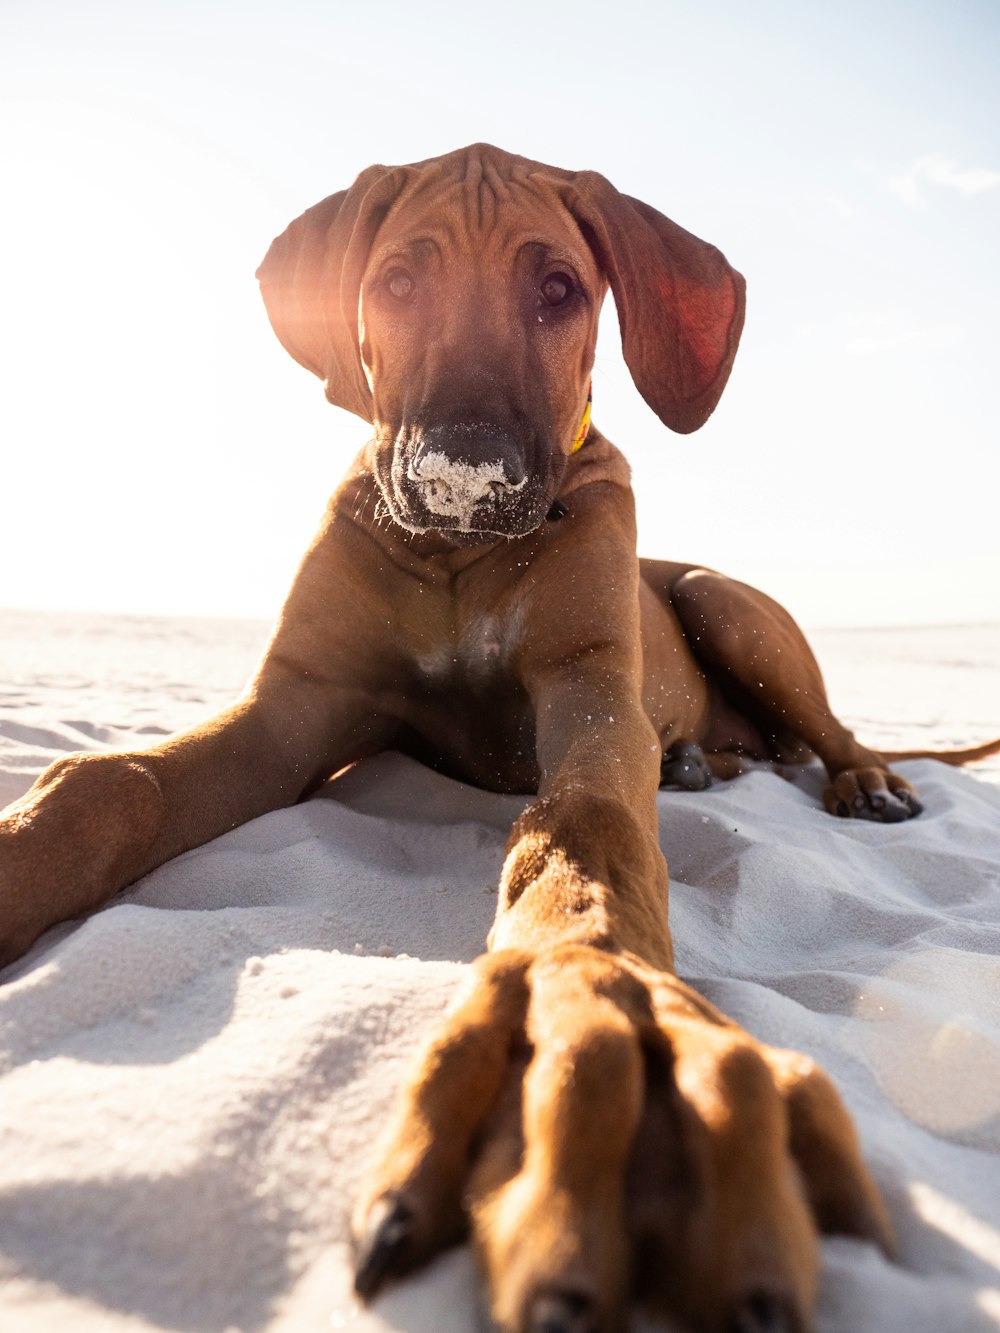 Perro marrón de pelo corto tumbado en la arena blanca durante el día